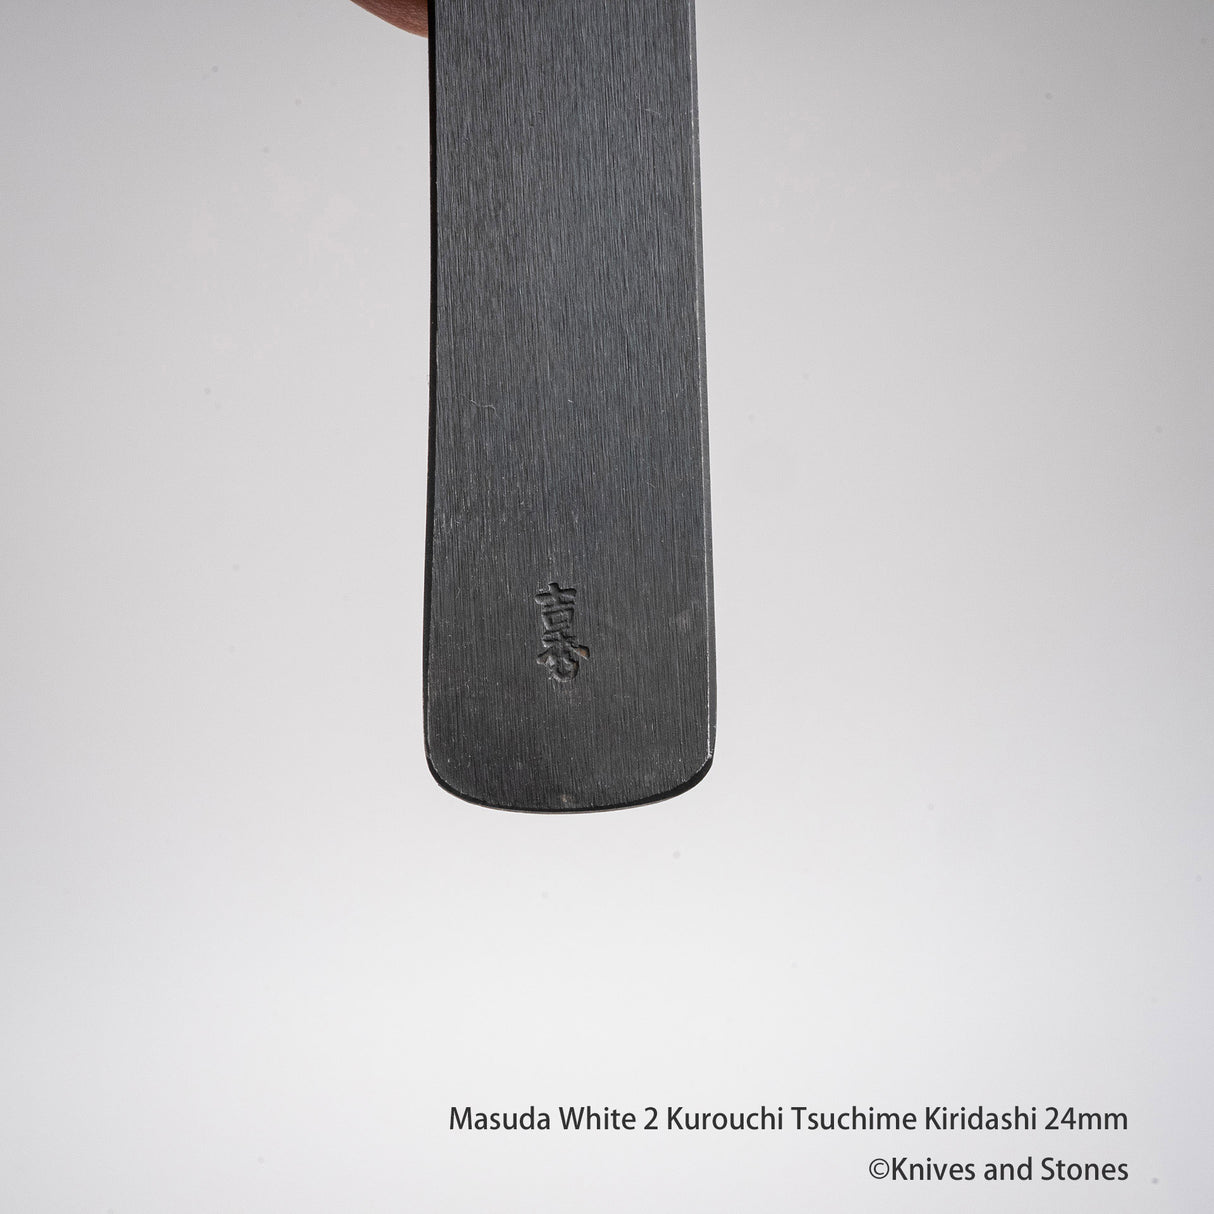 Masuda White 2 Kurouchi Tsuchime Kiridashi 24mm